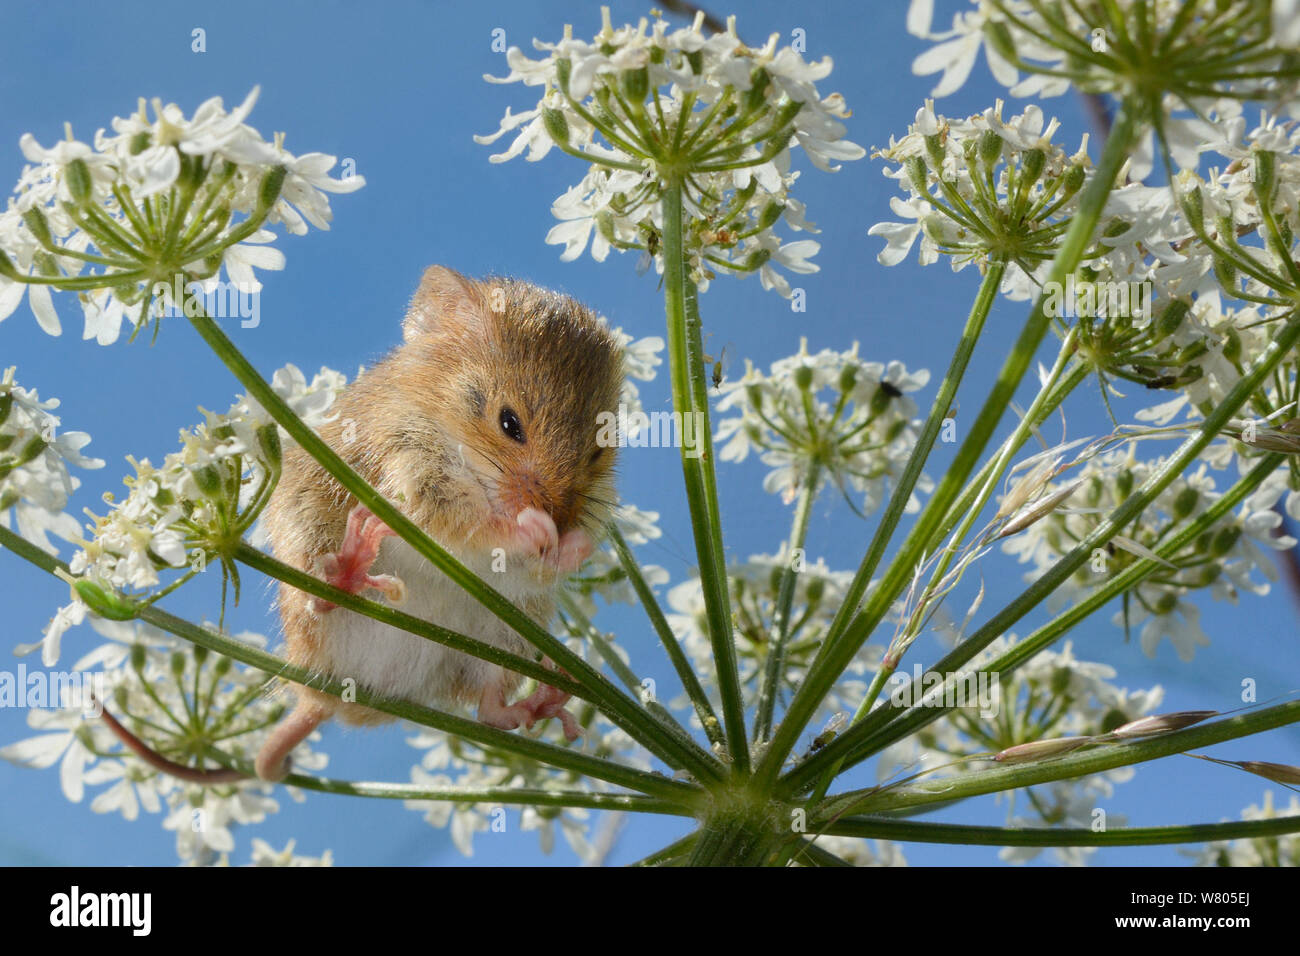 Ernte Maus (Micromys Minutus) Reinigung der Nase auf Gemeinsame scharfkraut (Heracleum sphondylium) flowerhead nach Freigabe, Molton, Northampton, UK, Juni. Model Released. Stockfoto